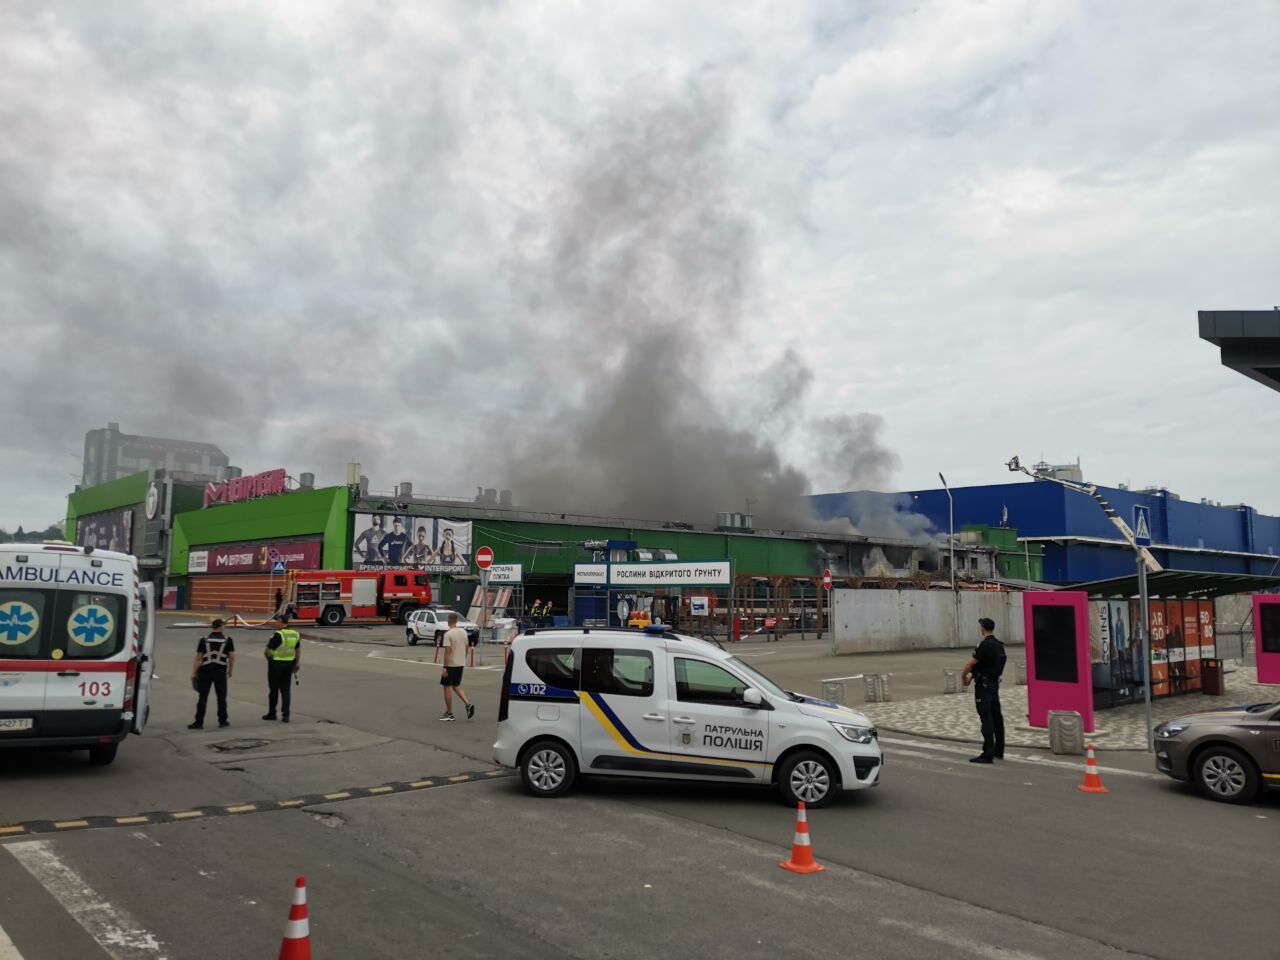 У Києві спалахнула потужна пожежа в торговельному центрі, піднявся дим. Фото і відео